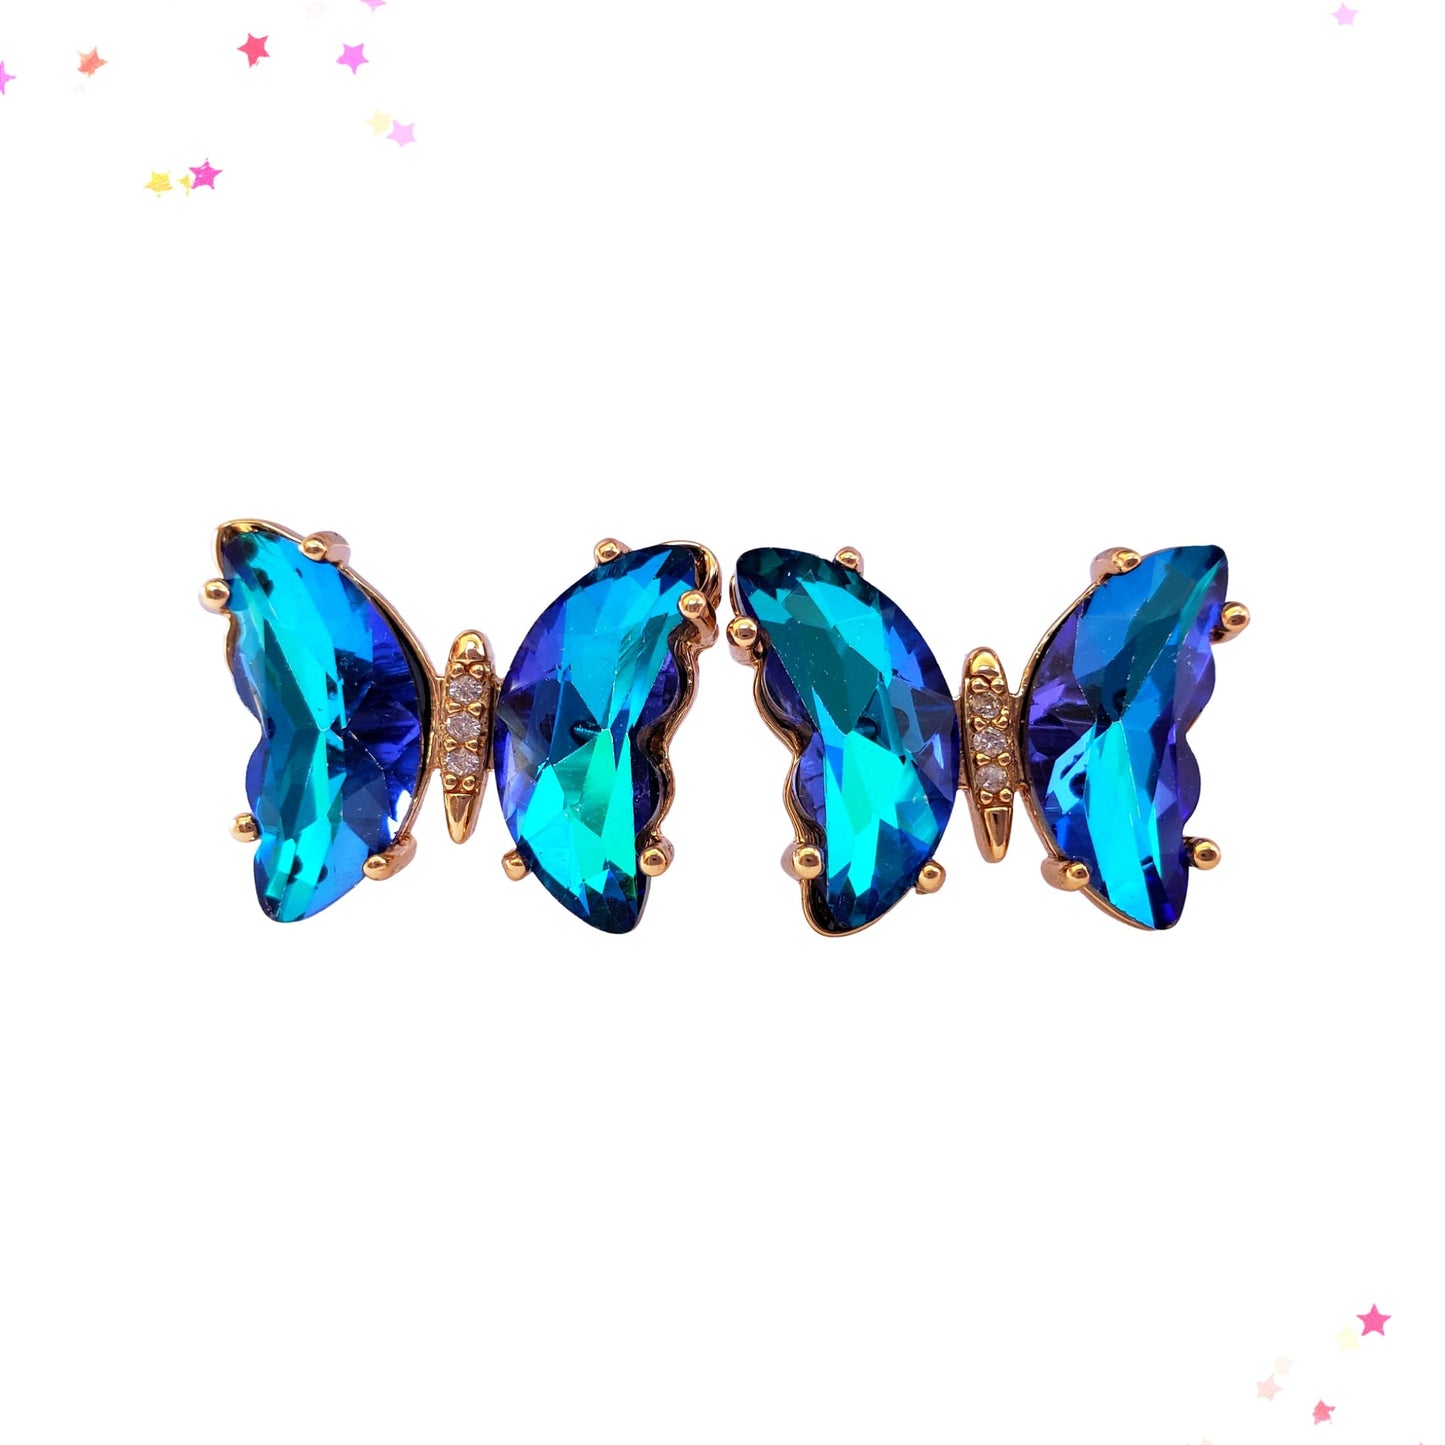 Butterfly Earrings in Ultramarine from Confetti Kitty, Only 12.99